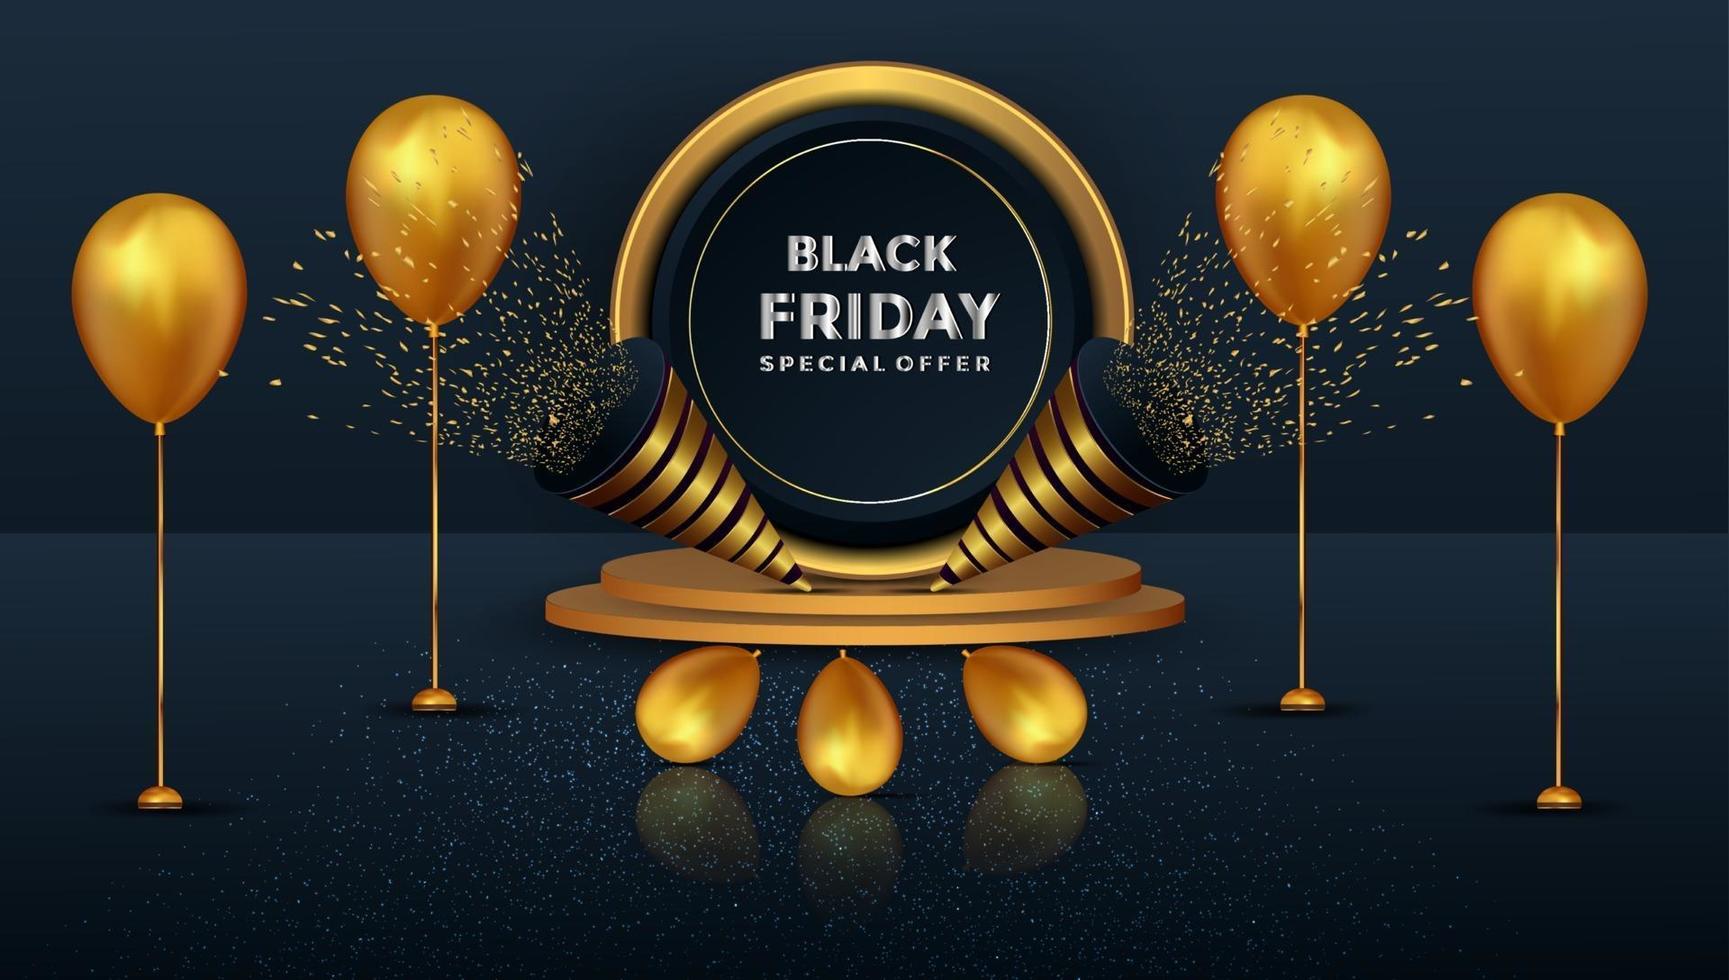 Black Friday oferta especial realista de pódio e balões em ouro vetor